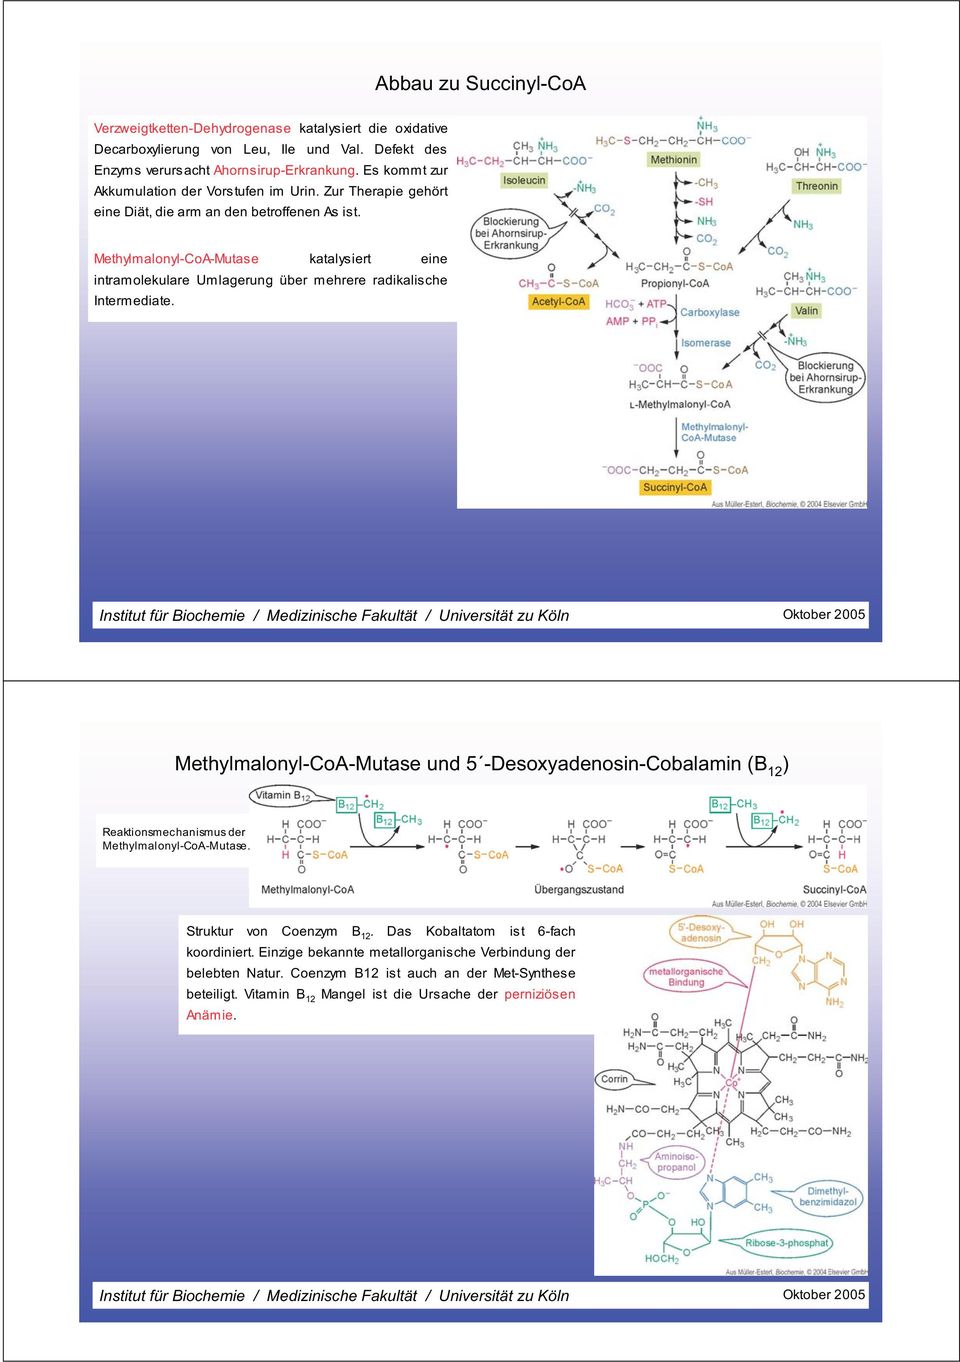 Methylmalonyl-CoA-Mutase katalysiert eine intramolekulare Umlagerung über mehrere radikalische Intermediate.